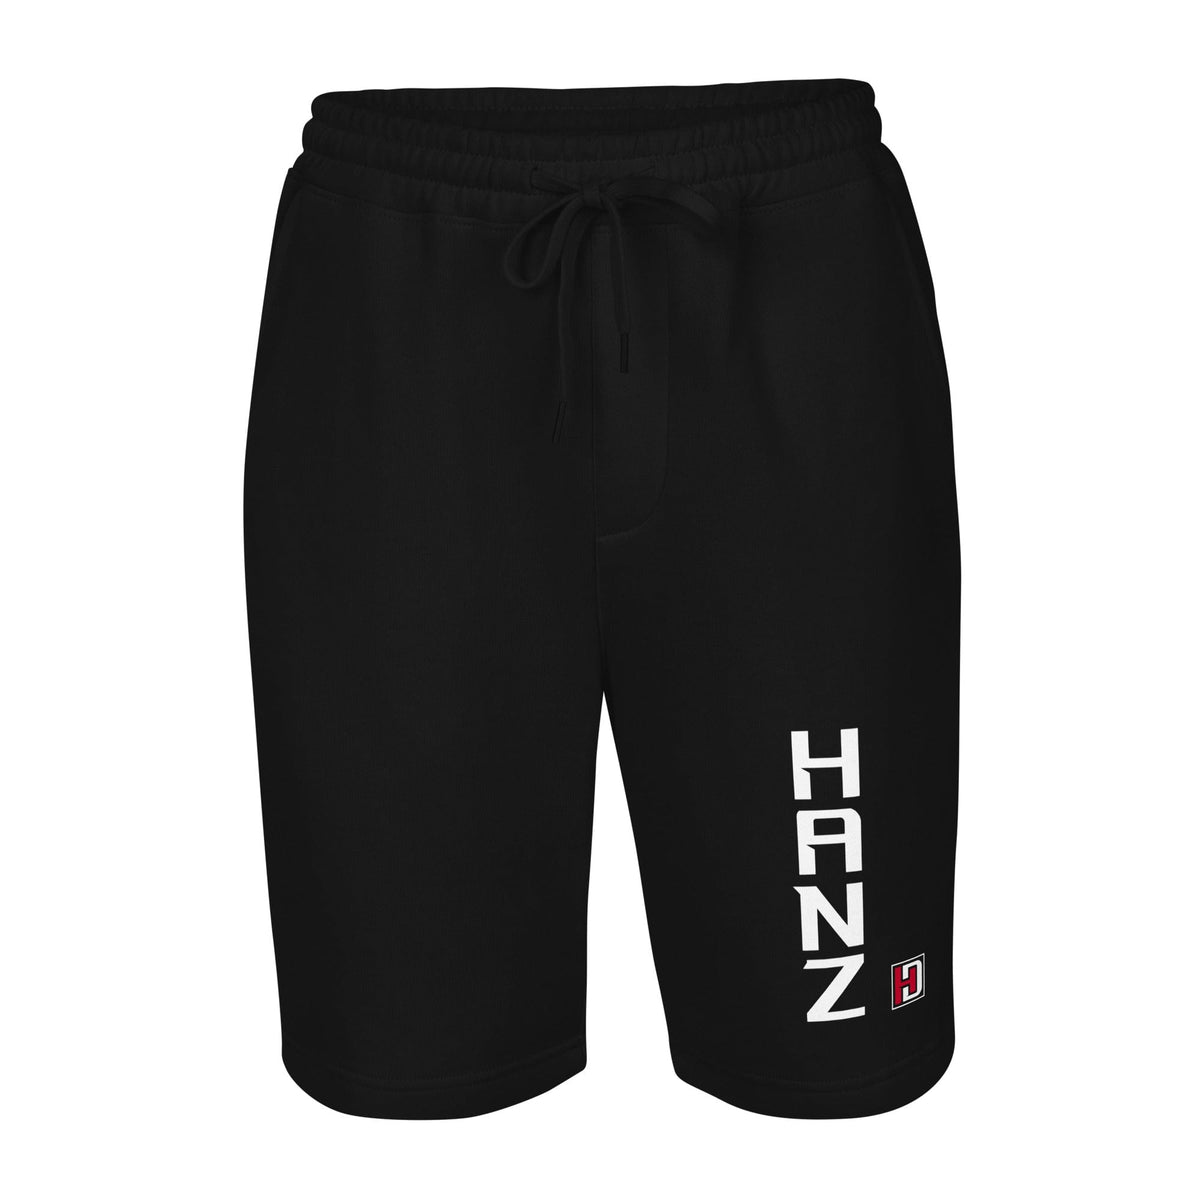 Hanz fleece shorts Black